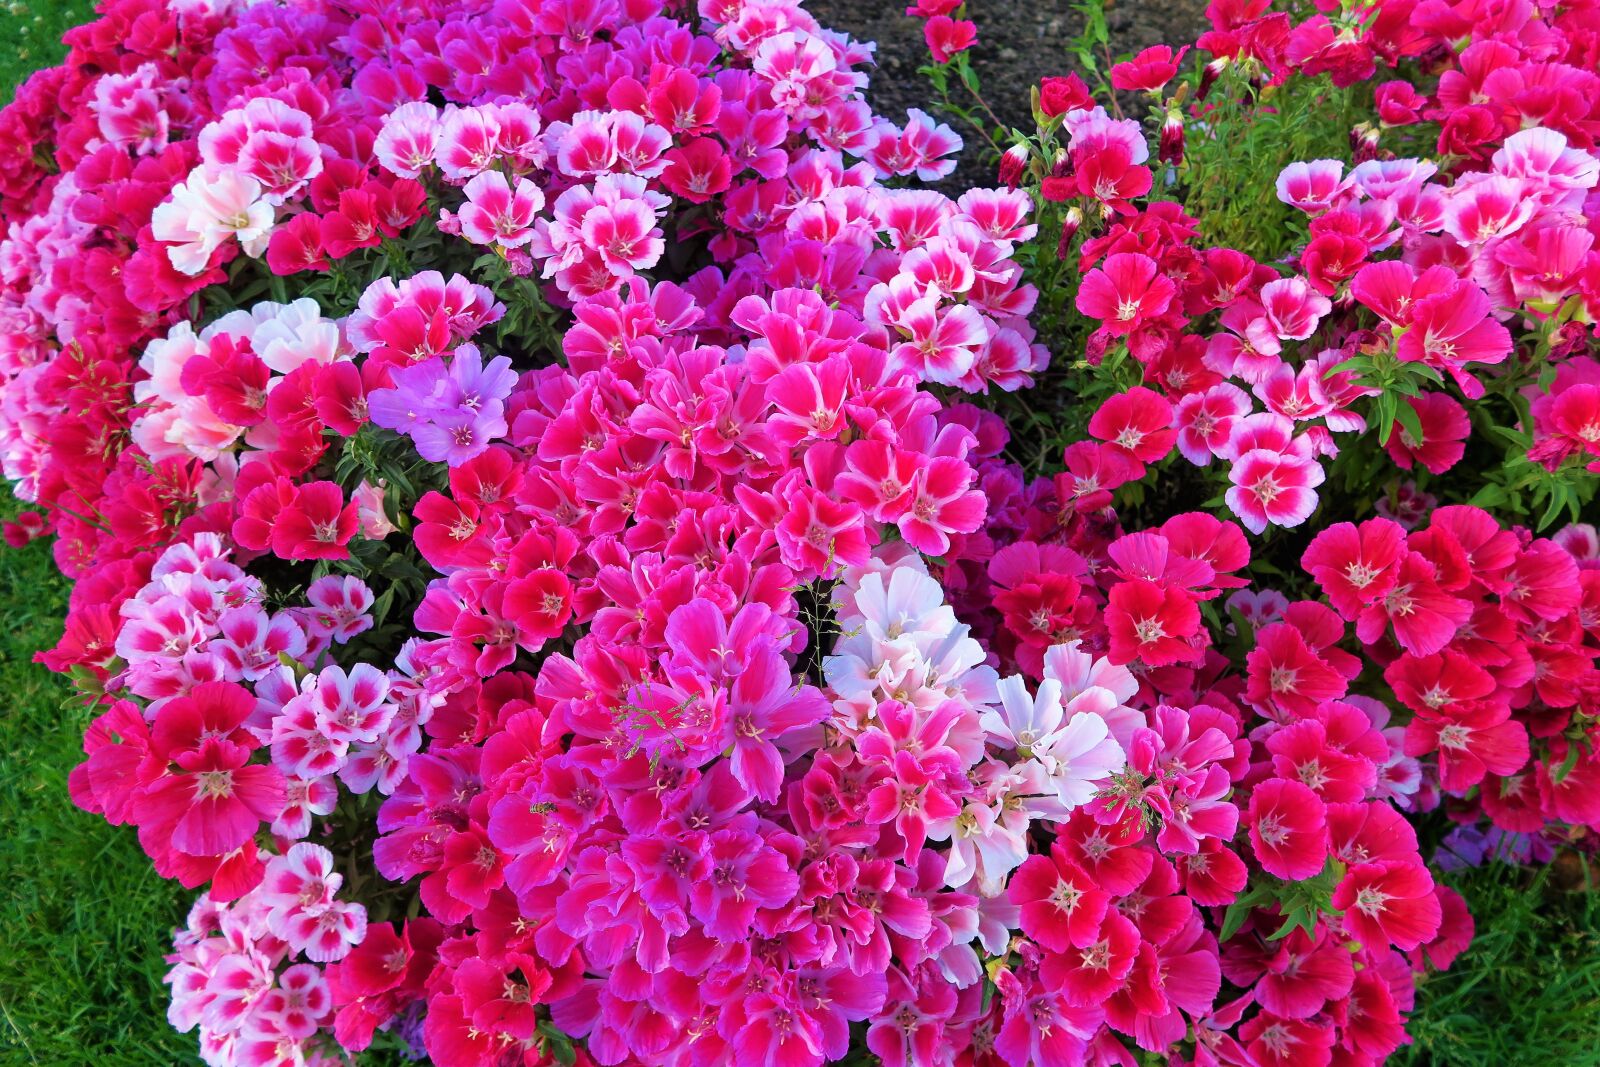 Canon PowerShot G7 X sample photo. Flowers, landscape, colors photography